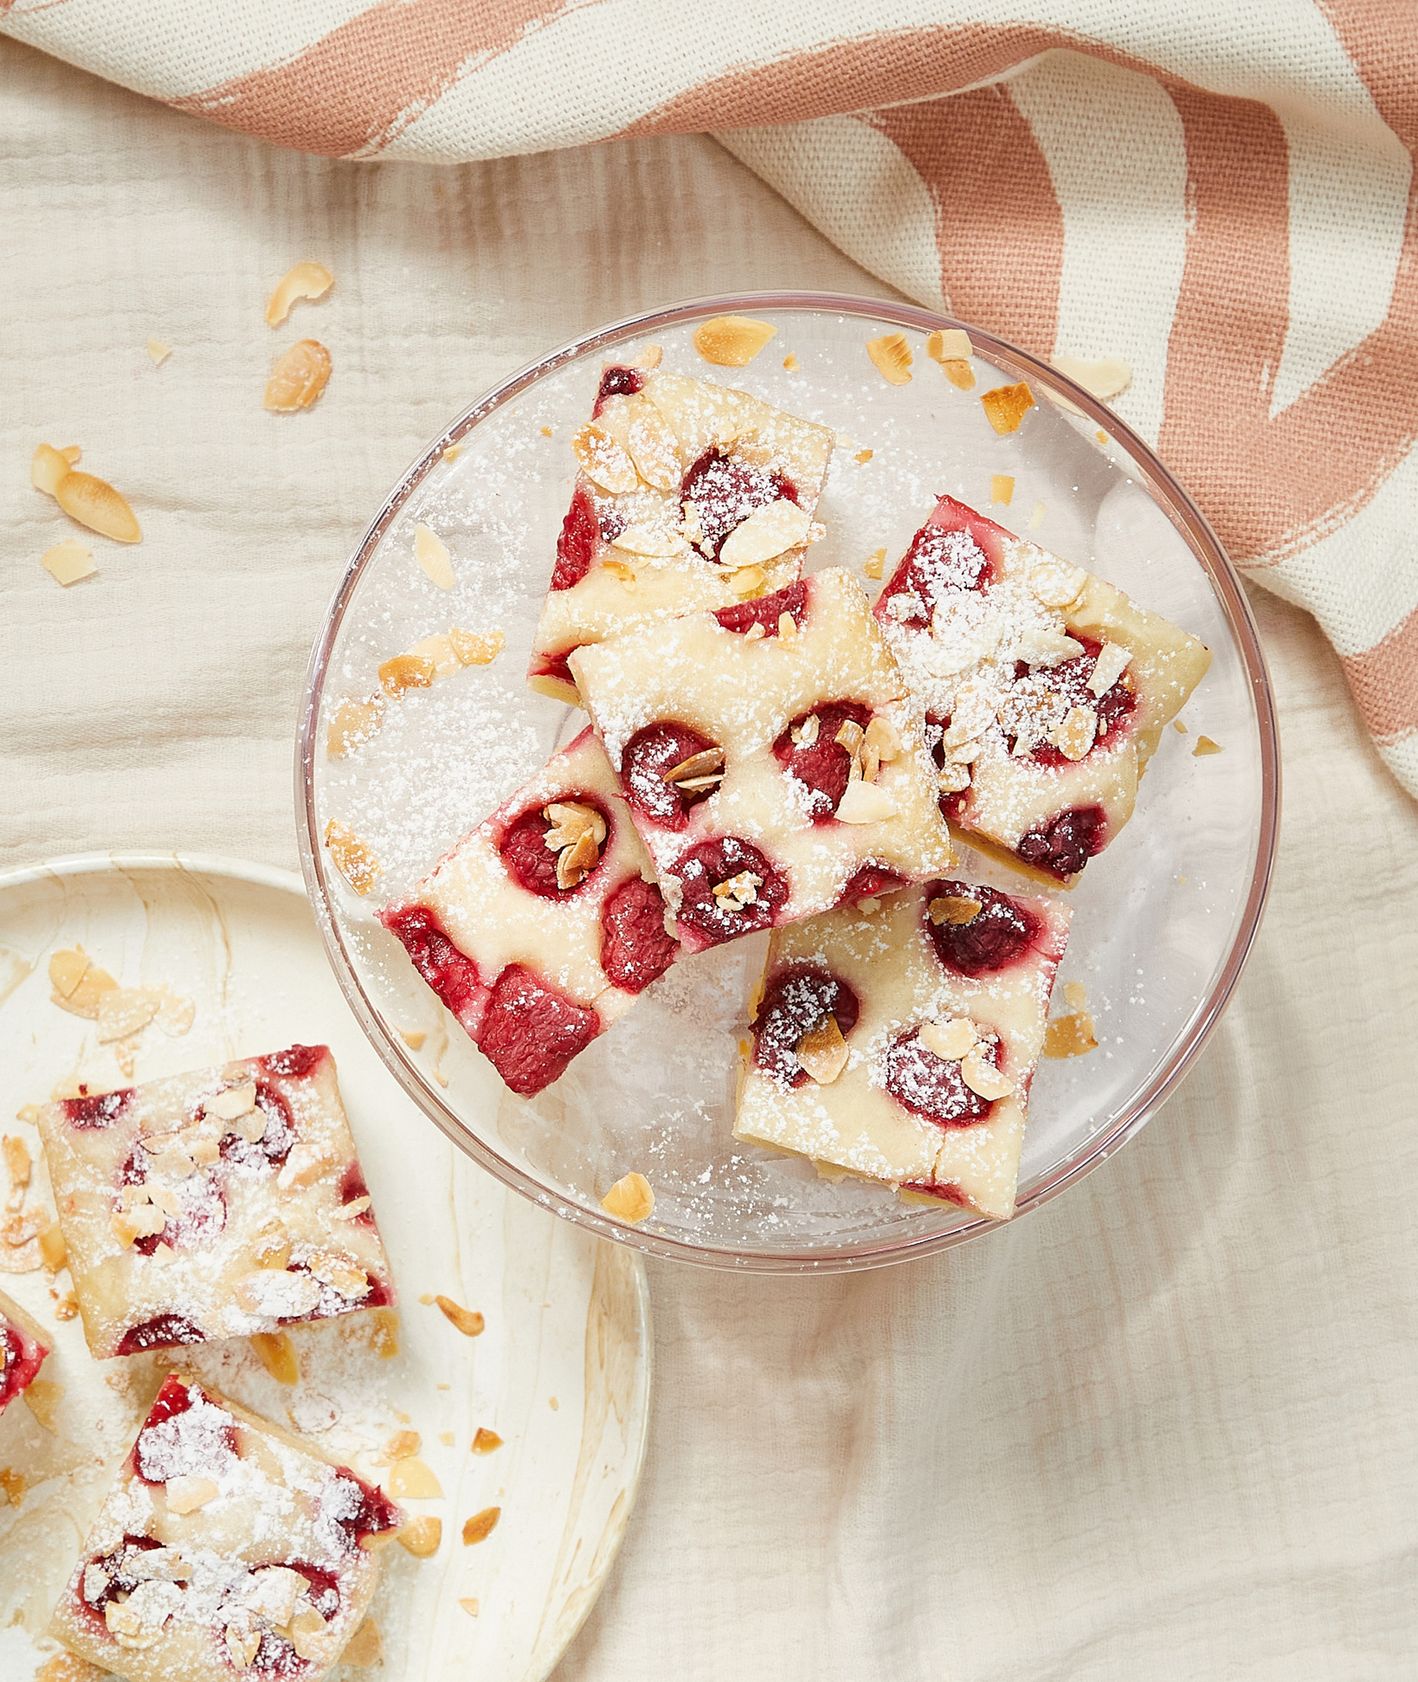 Najlepsze wypieki z malinami – ciasto jogurtowe z malinami (fot. Maciek Niemojewski)